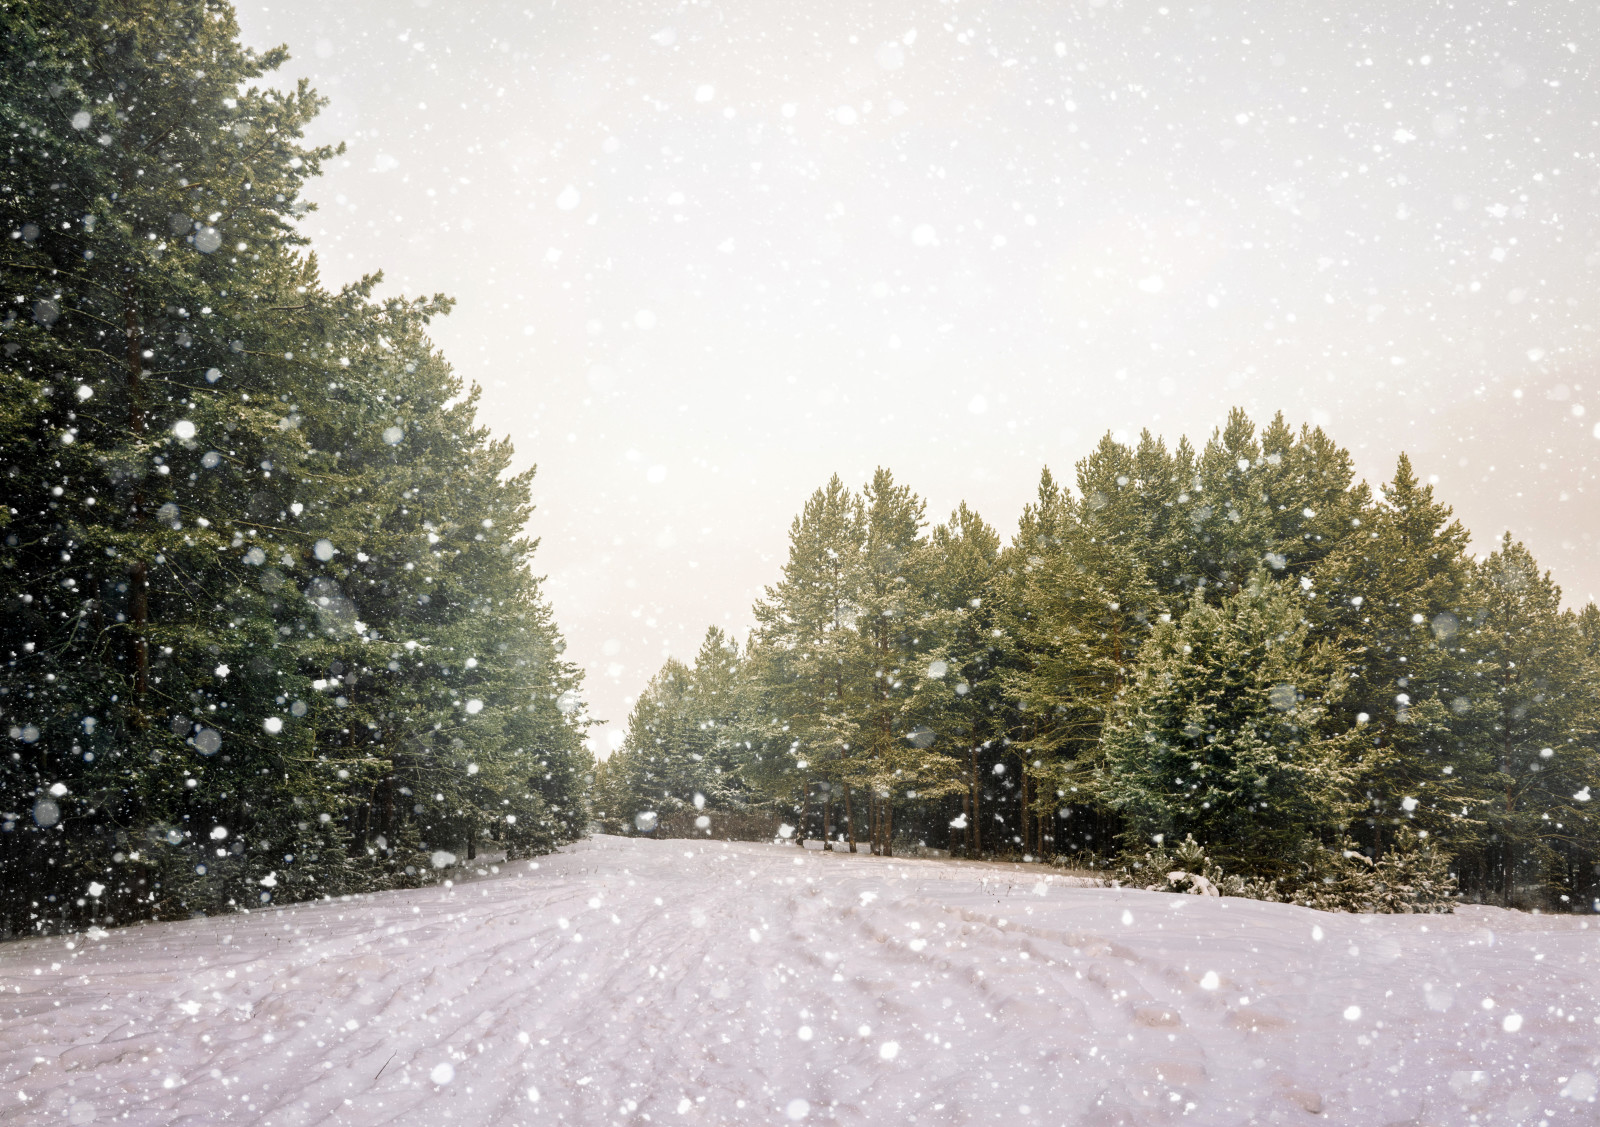 salju, kepingan salju, hutan, musim dingin, jalan, pohon